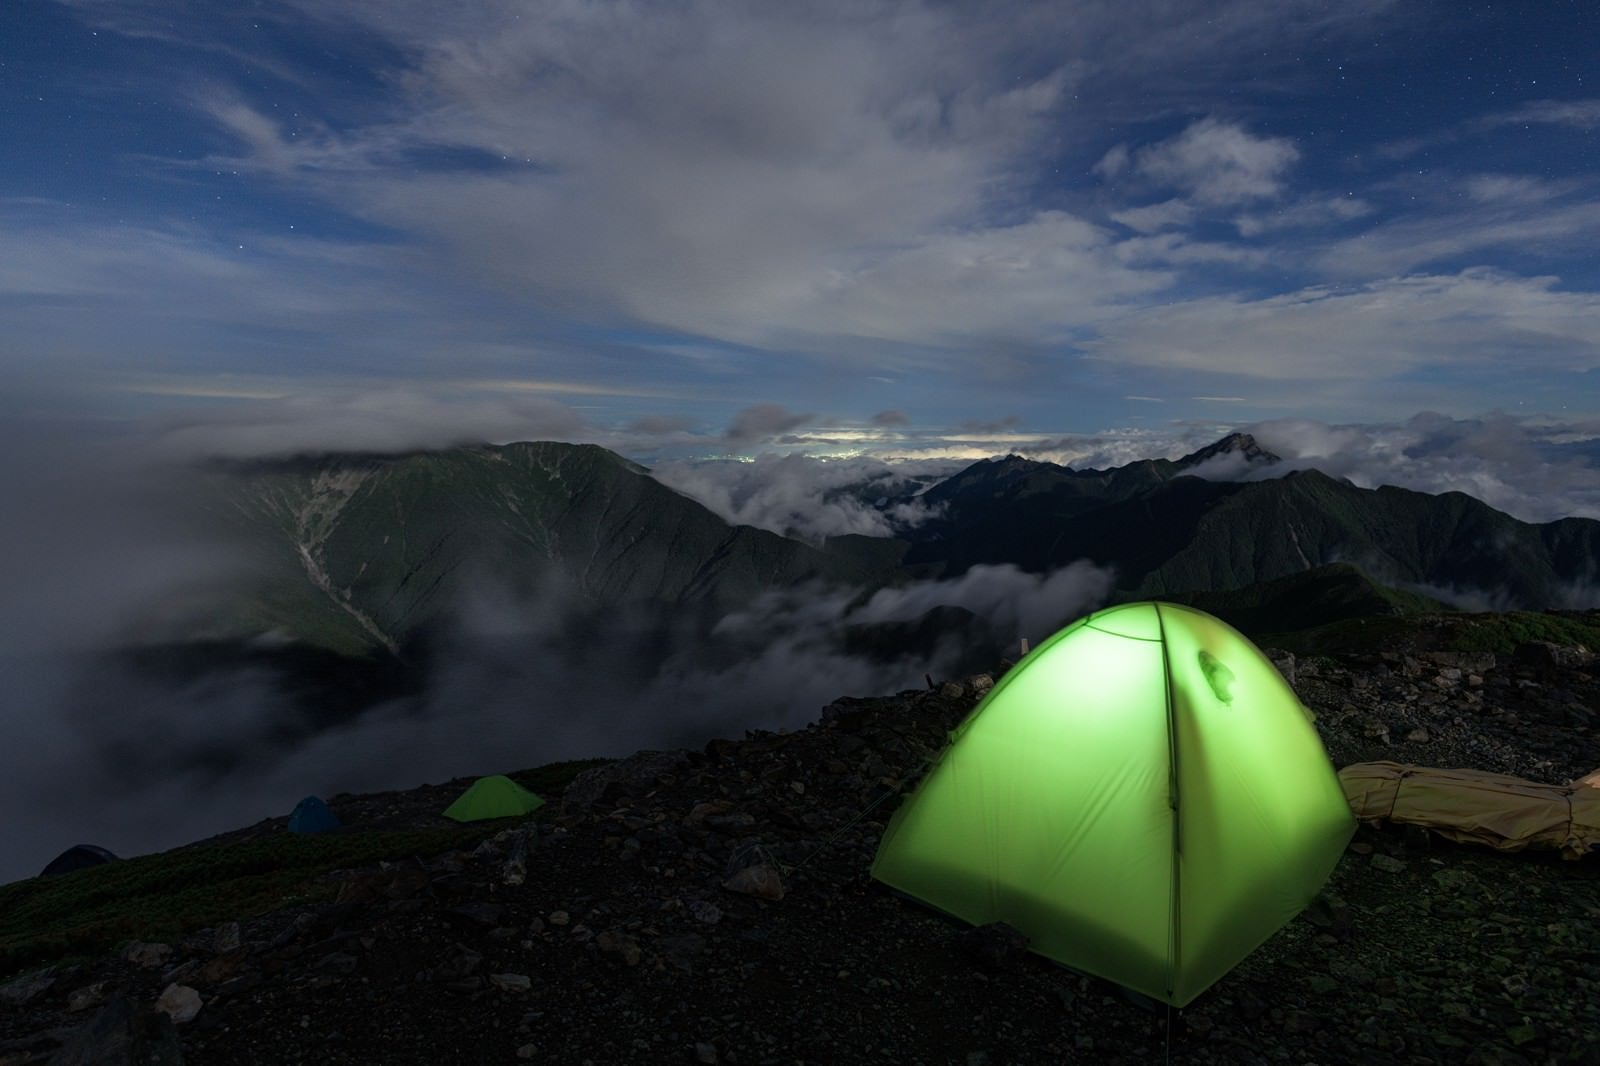 「仙丈ヶ岳とテントの灯り」の写真